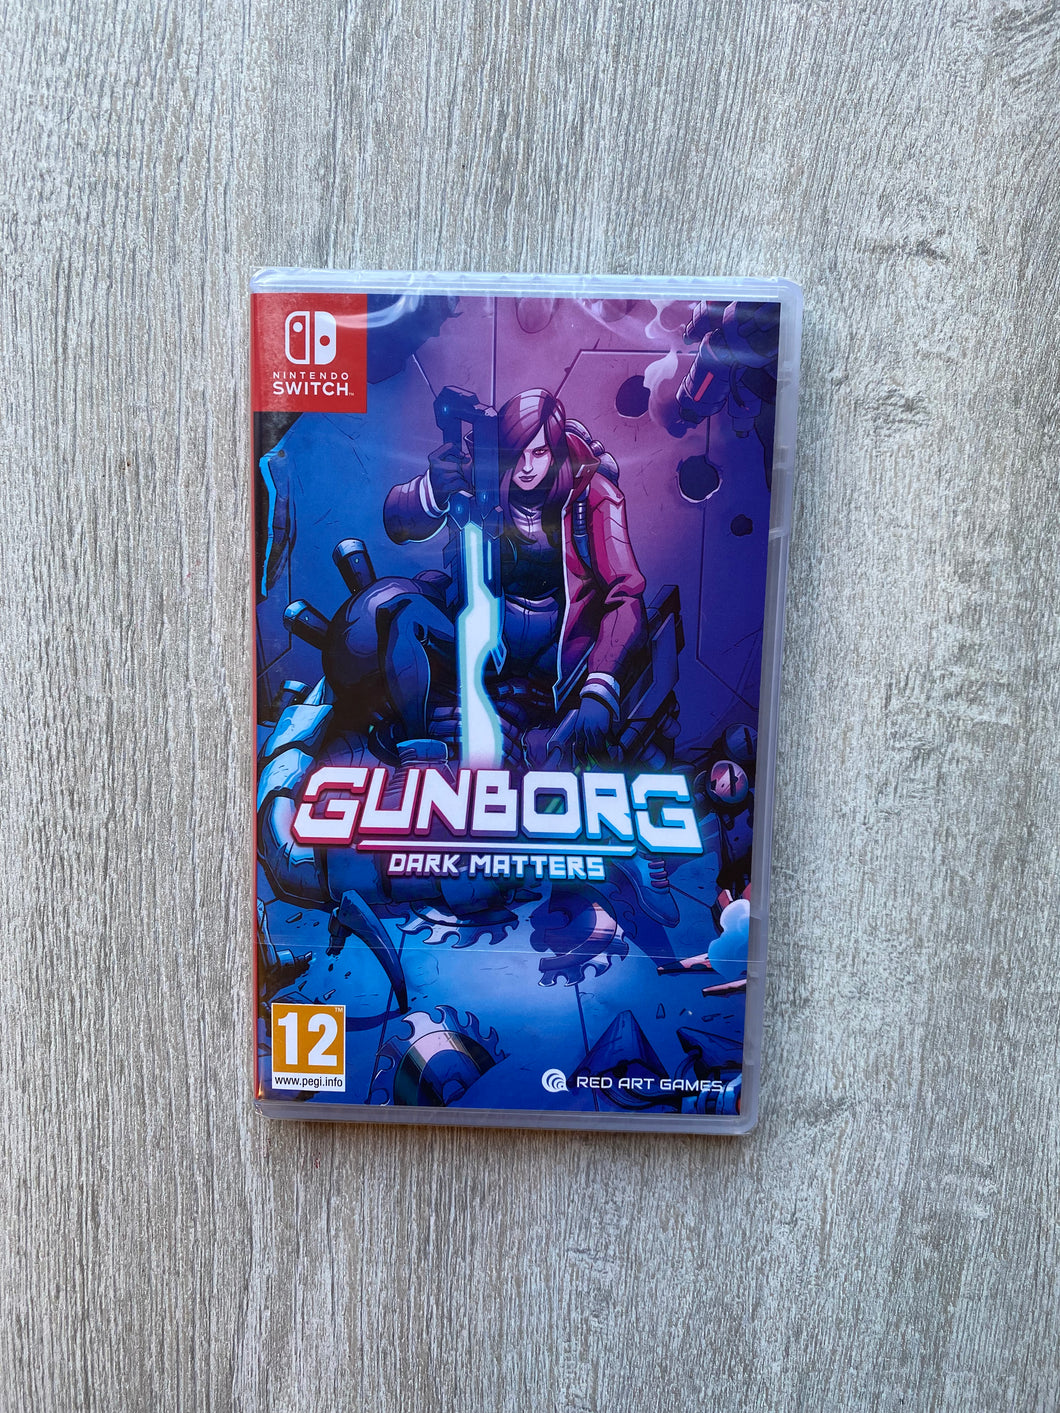 Gunborg : dark matters / Red art games / Switch / 2900 copies